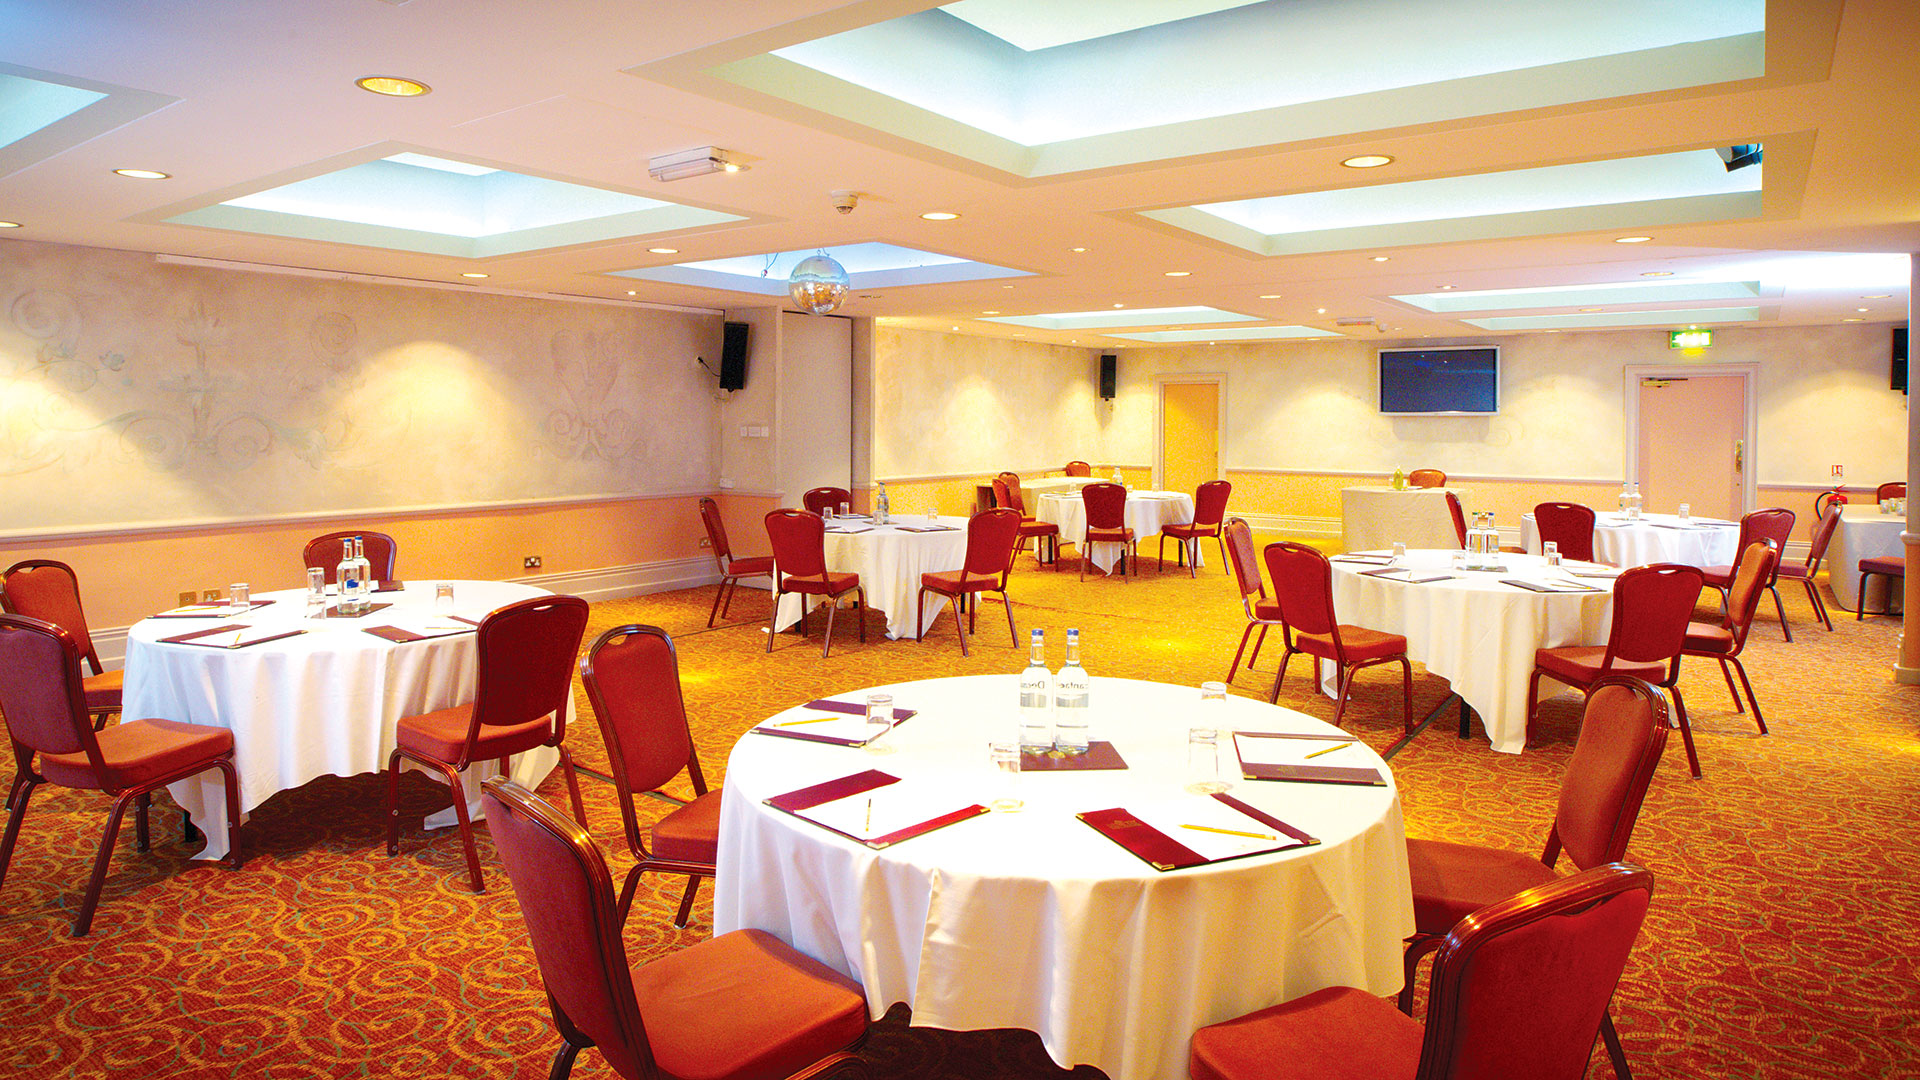 Lante meeting room at Nailcote Hall Hotel